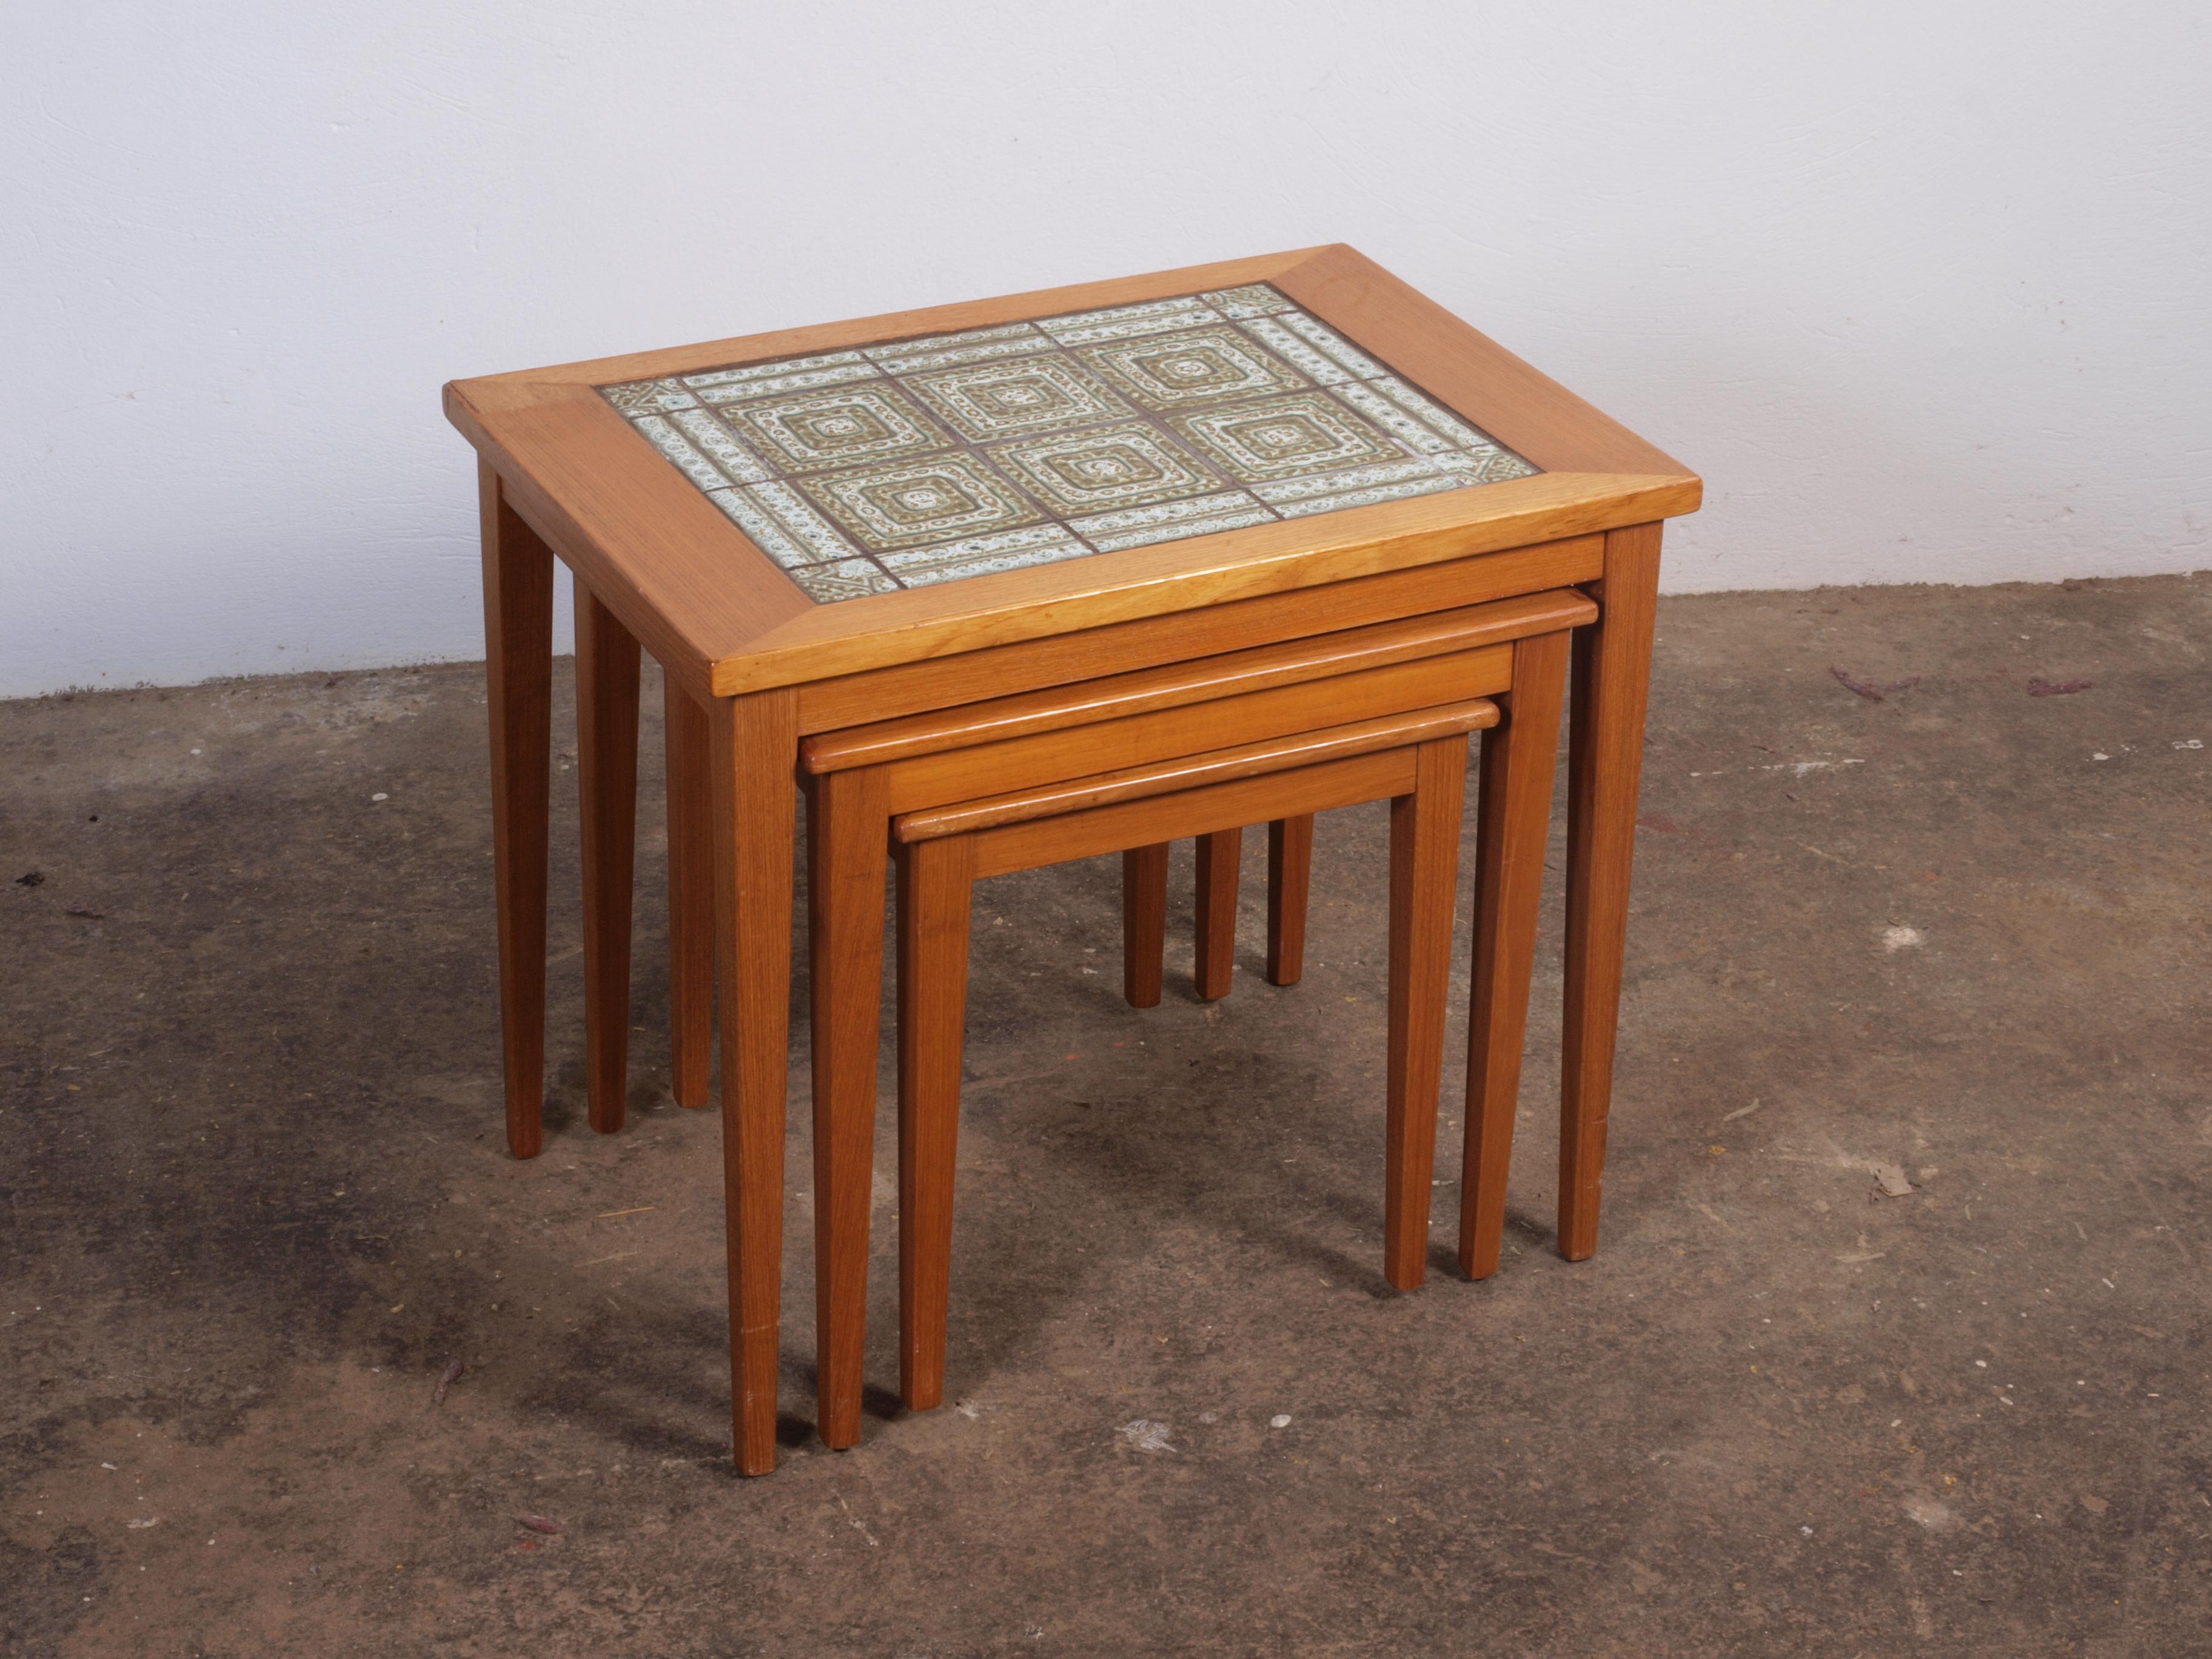 3 Tische aus Teakholz im dänischen Mid-Century-Design, wobei der größte Tisch mit eleganten Fliesen versehen ist. Trotz eines kleinen Eckfehlers auf dem großen Tisch sind sie in schönem Zustand. Leicht zerlegbar für günstige Luftfracht. Die Tische